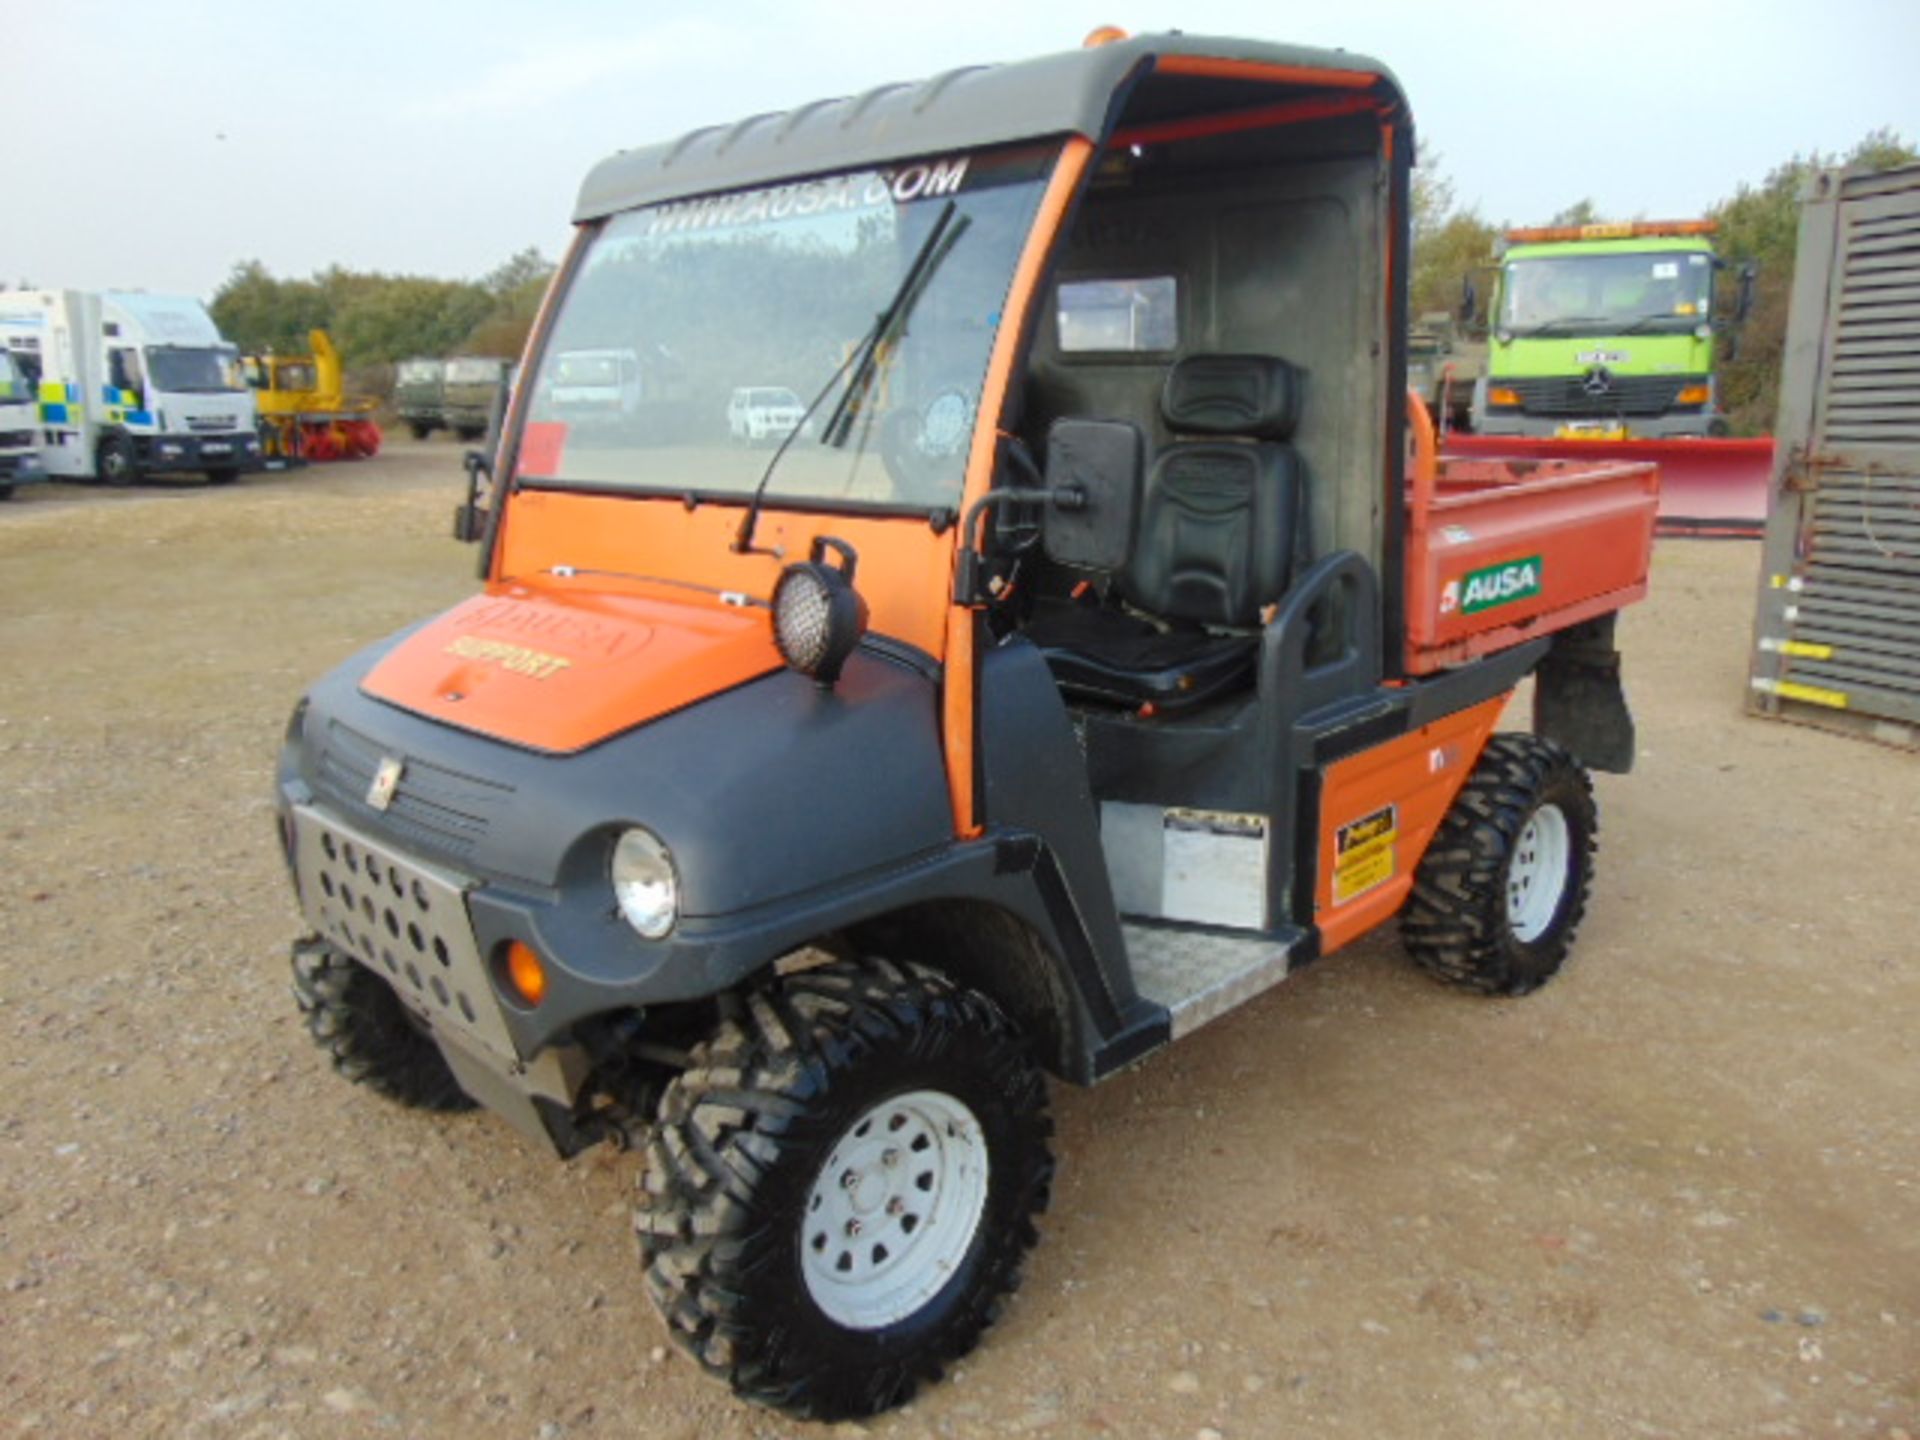 2004 Ausa M50 4WD Utility Vehicle UTV - Image 5 of 19